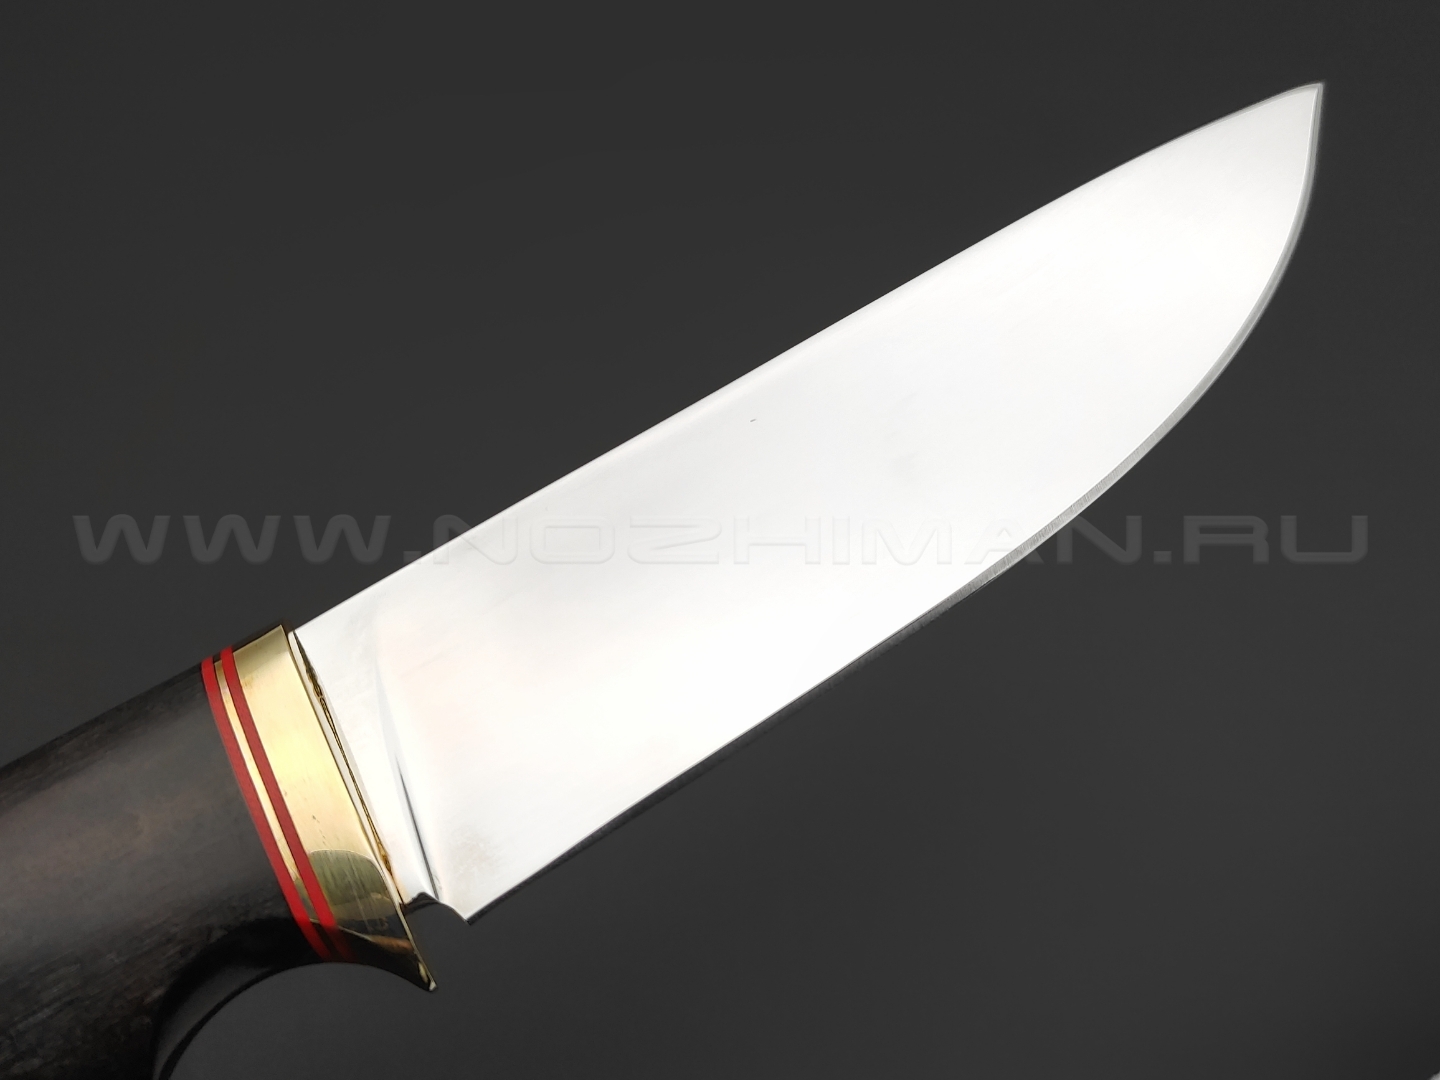 Товарищество Завьялова нож Олень Мод. сталь 95Х18, рукоять Дерево граб, латунь